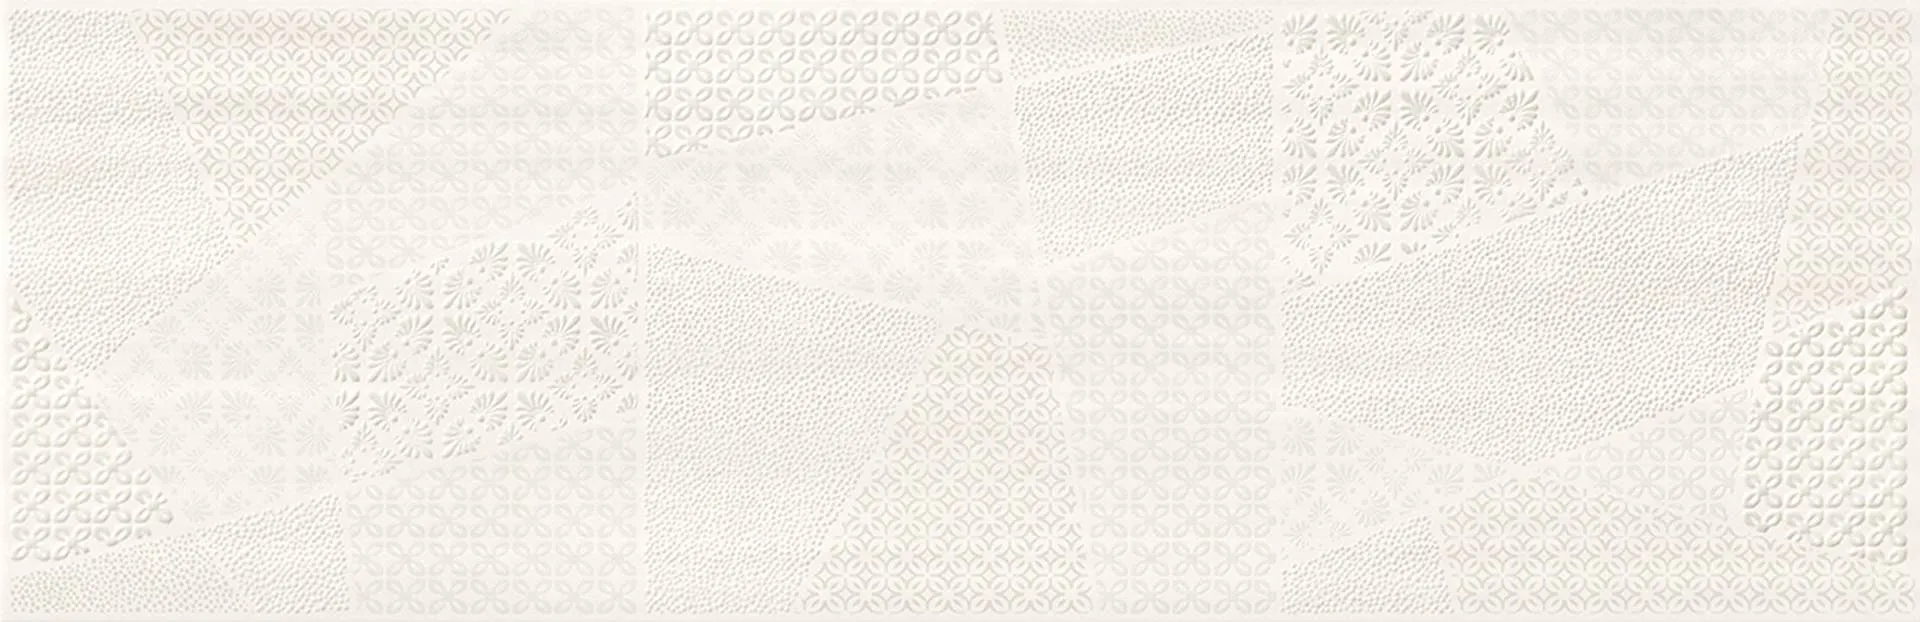 Dekor Ferano white Patchwork inserto satin rectified 24x74 Cersanit